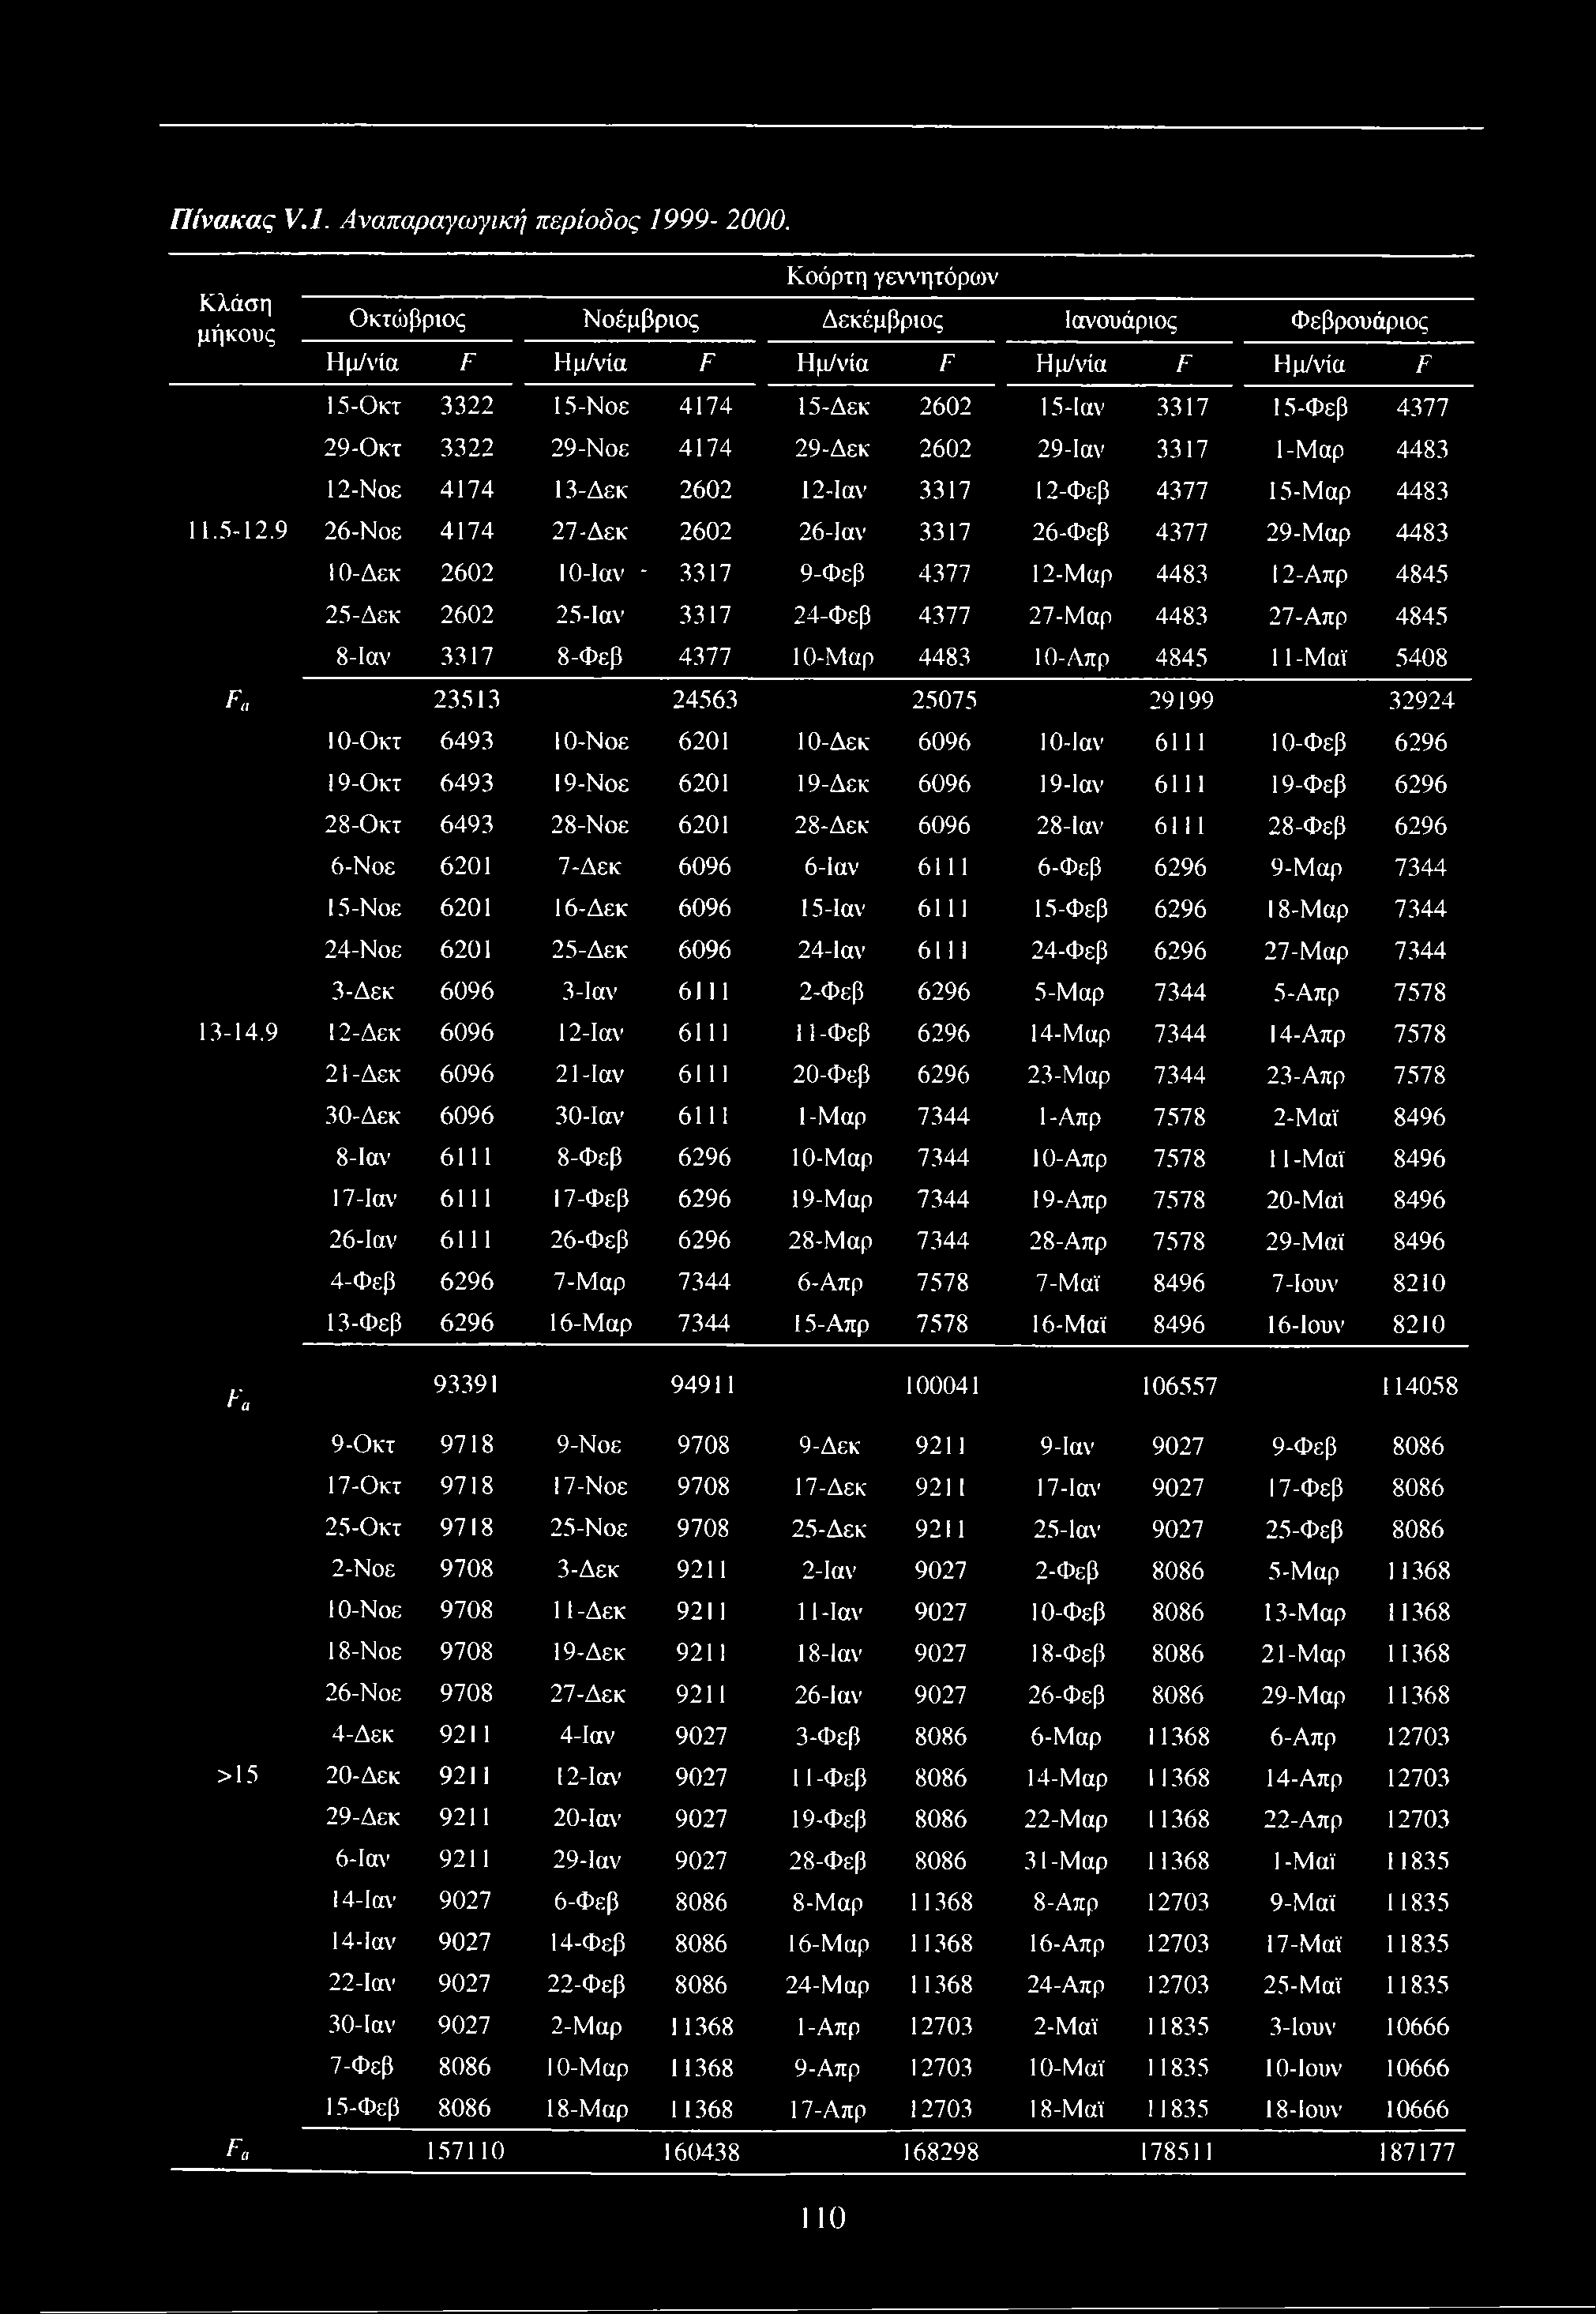 Πίνακας V.l. Αναπαραγωγική περίοδος 1999-2000. Κλάση μήκους.